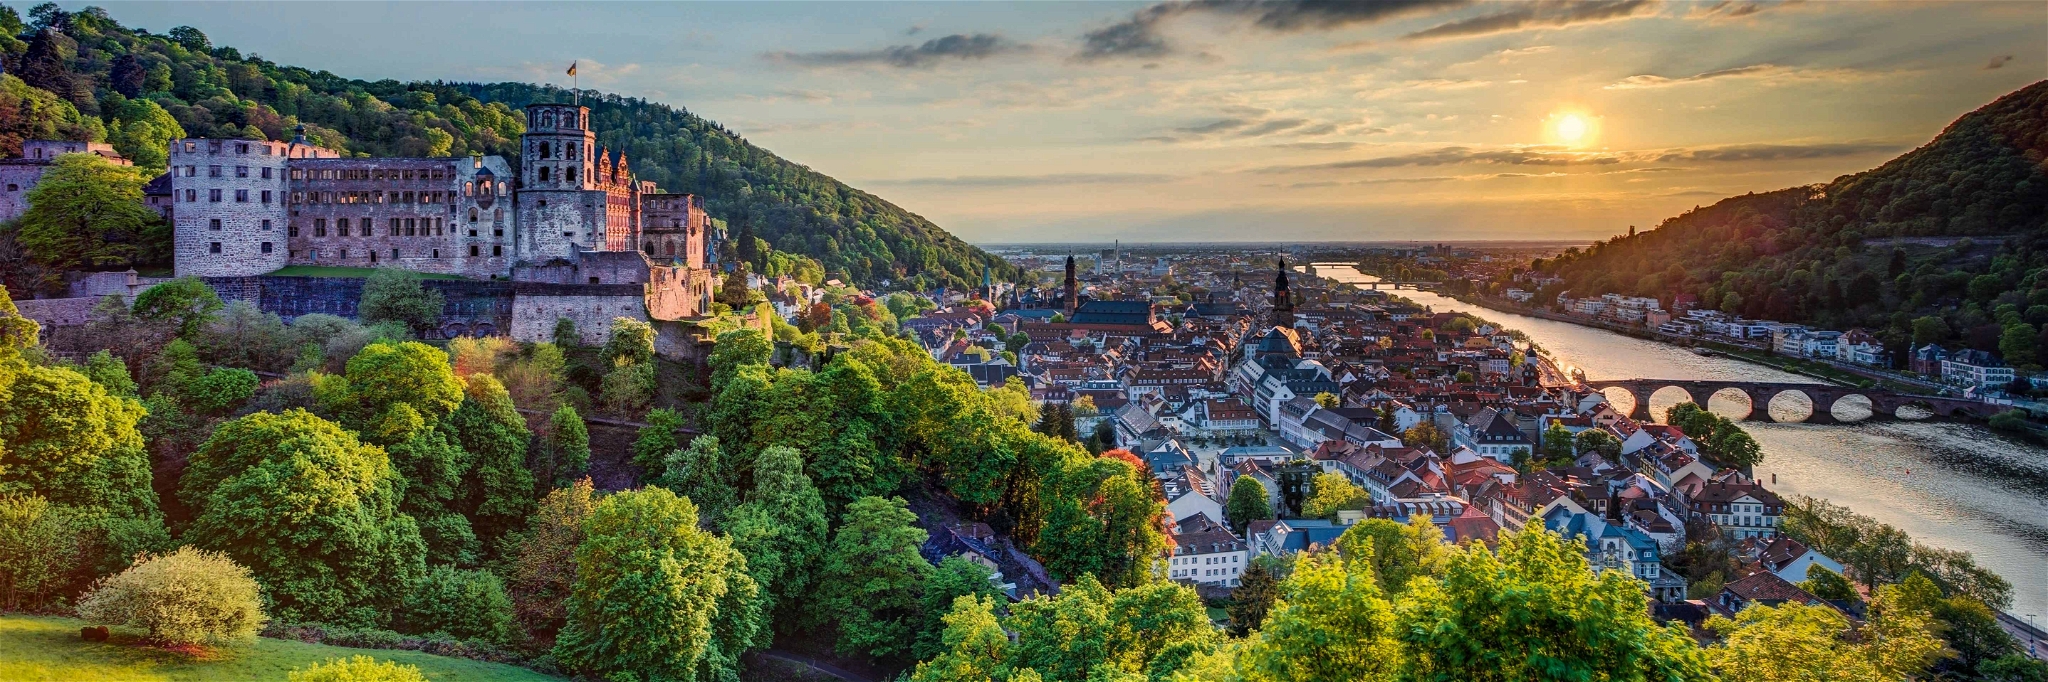 Beliebtes Reiseziel auch für ausländische Touristen: Heidelberg, hier mit der Schlossruine und dem Neckar.